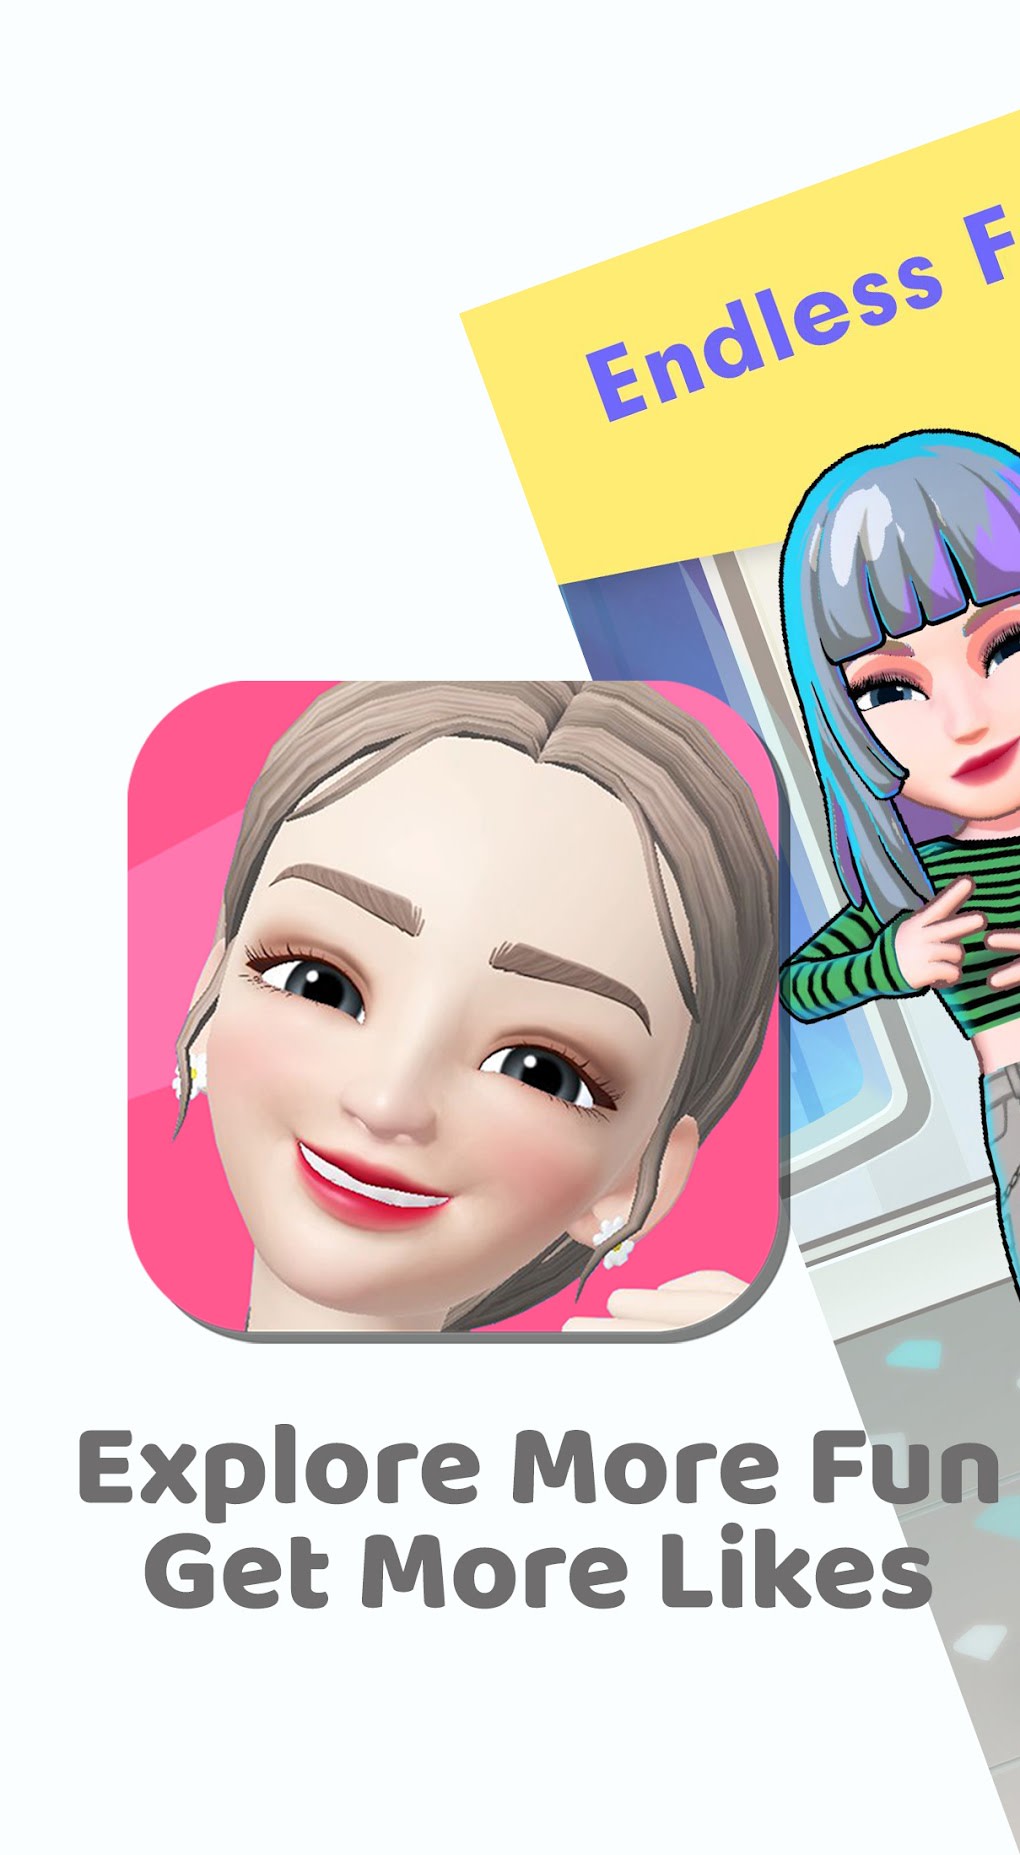 3D avatar maker, Emoji Maker S for Android - Download